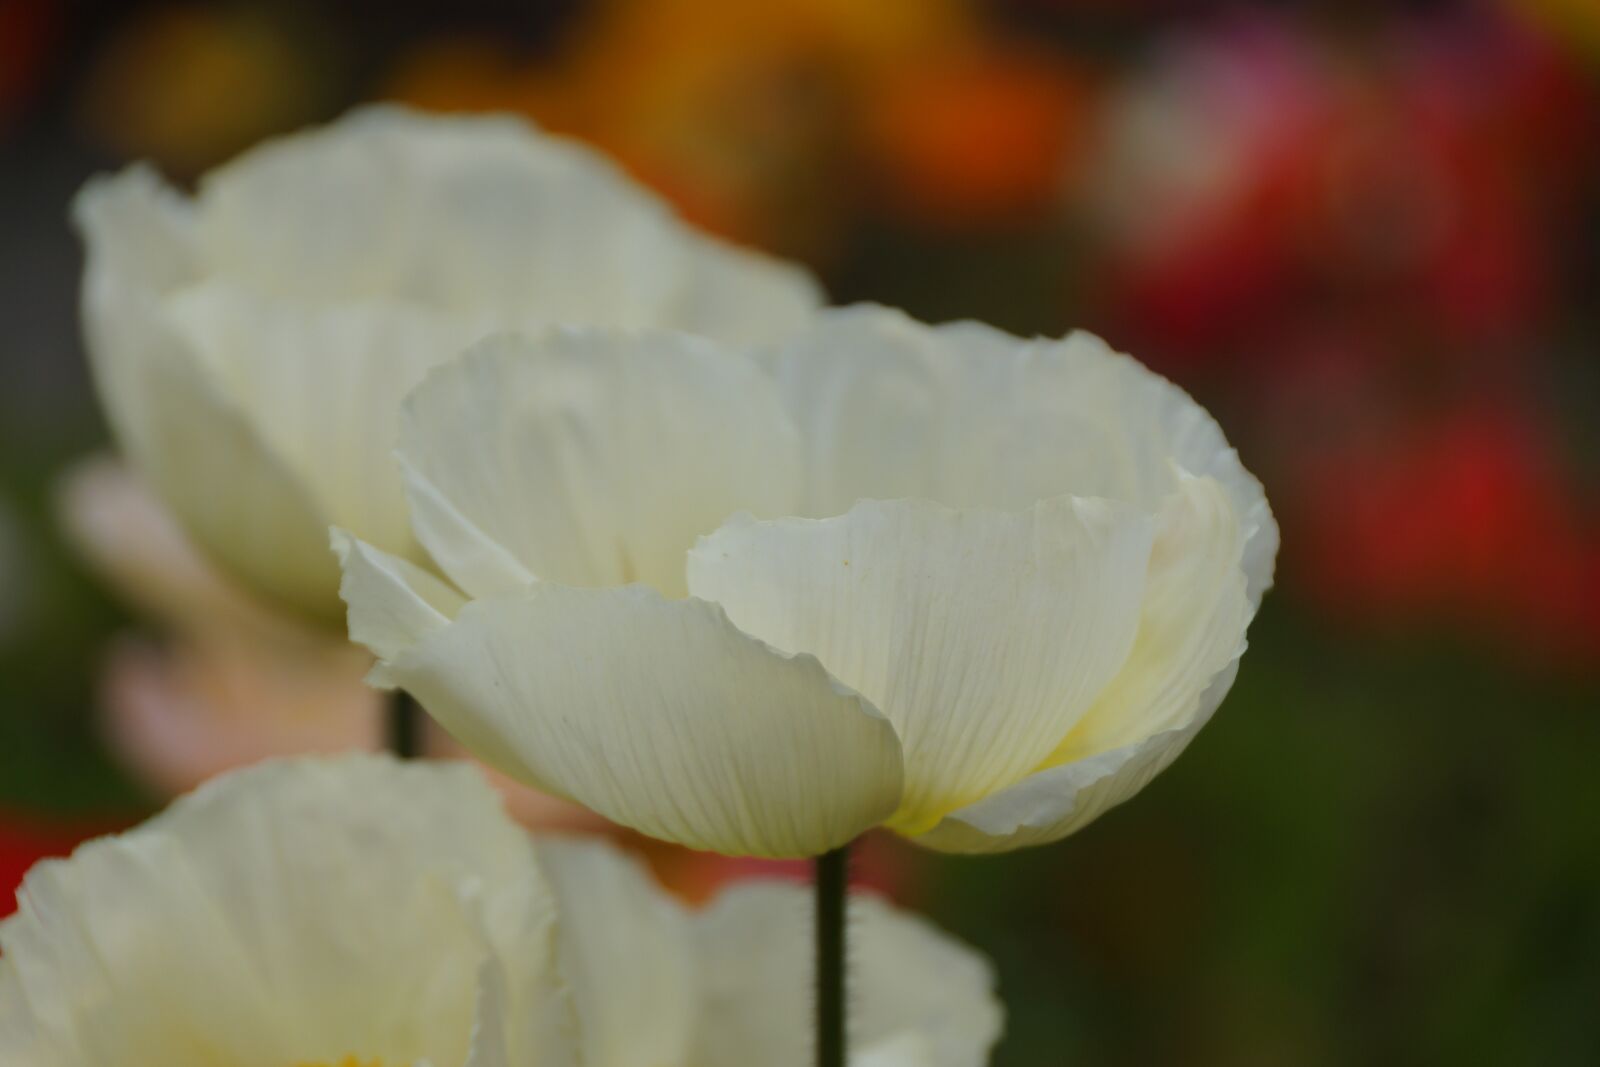 Sony SLT-A77 + Sony DT 18-250mm F3.5-6.3 sample photo. White, poppy, flower photography